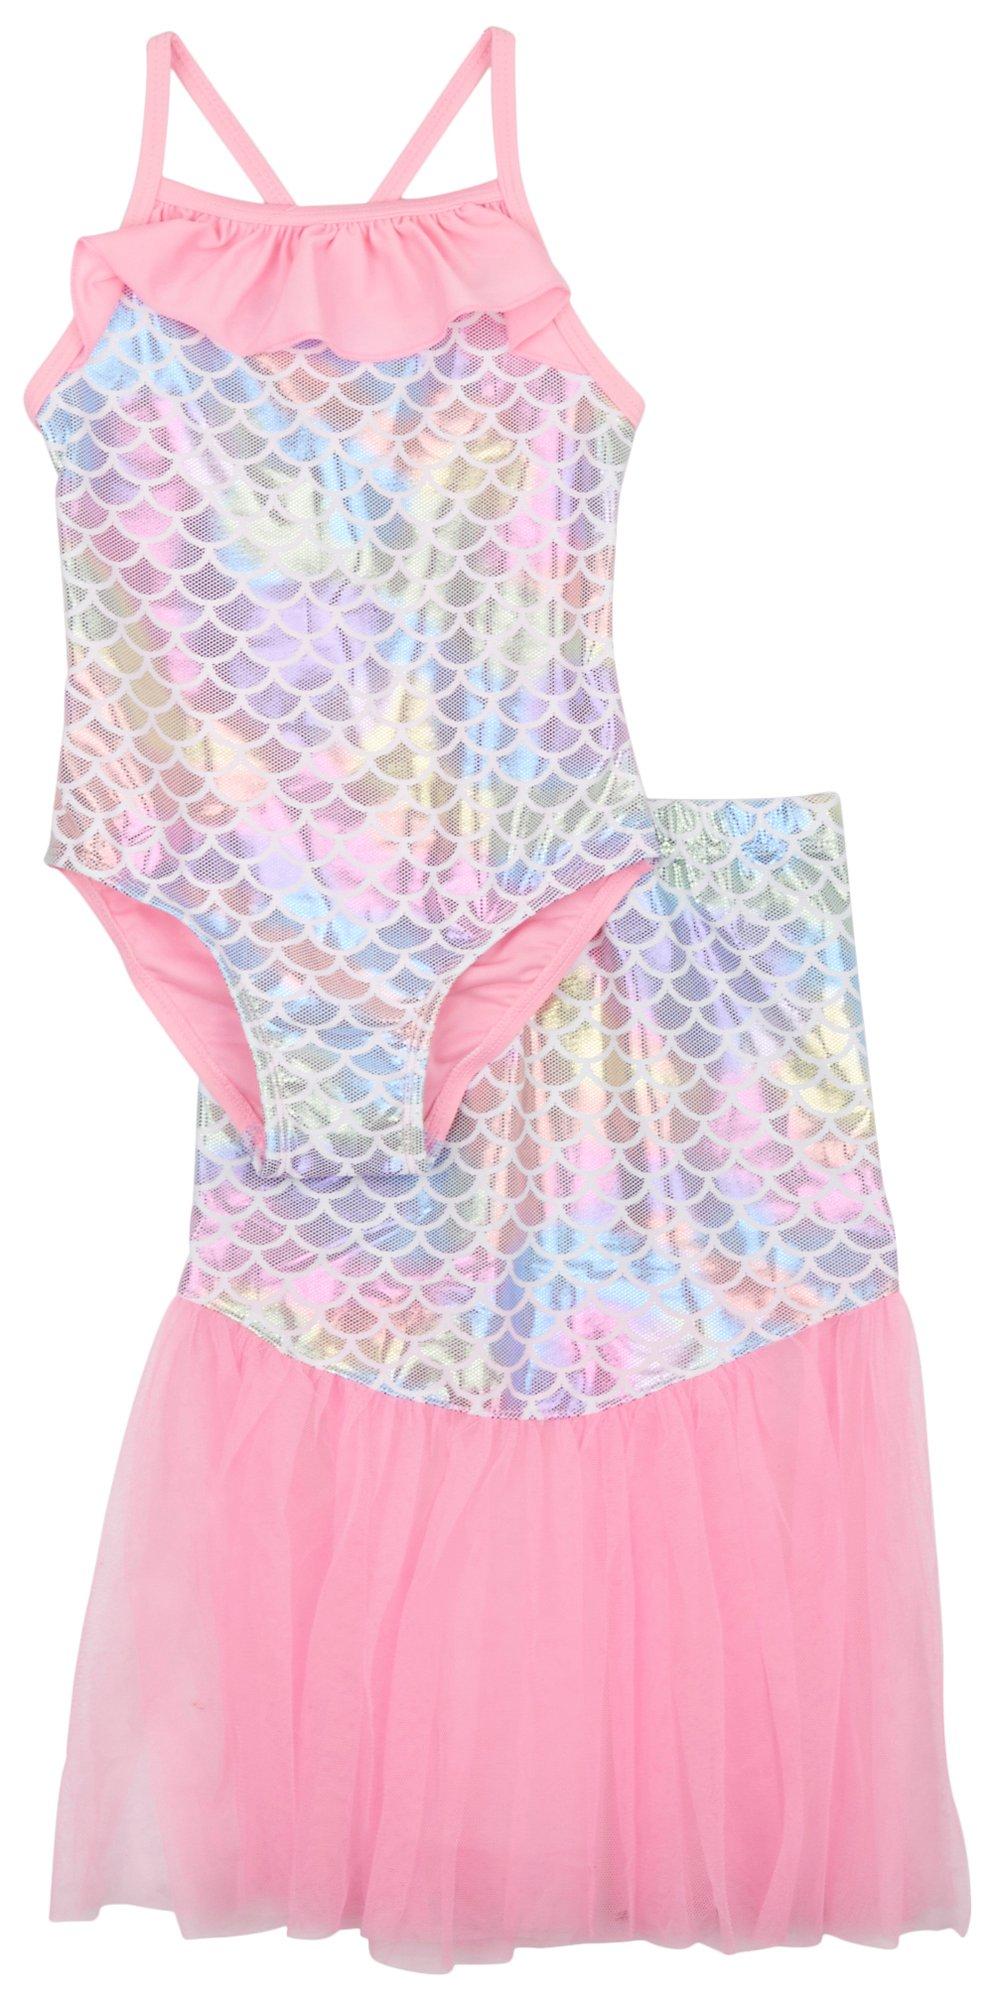 Toddler Girls 2 Pc. Mermaid Suit + Skirt Set